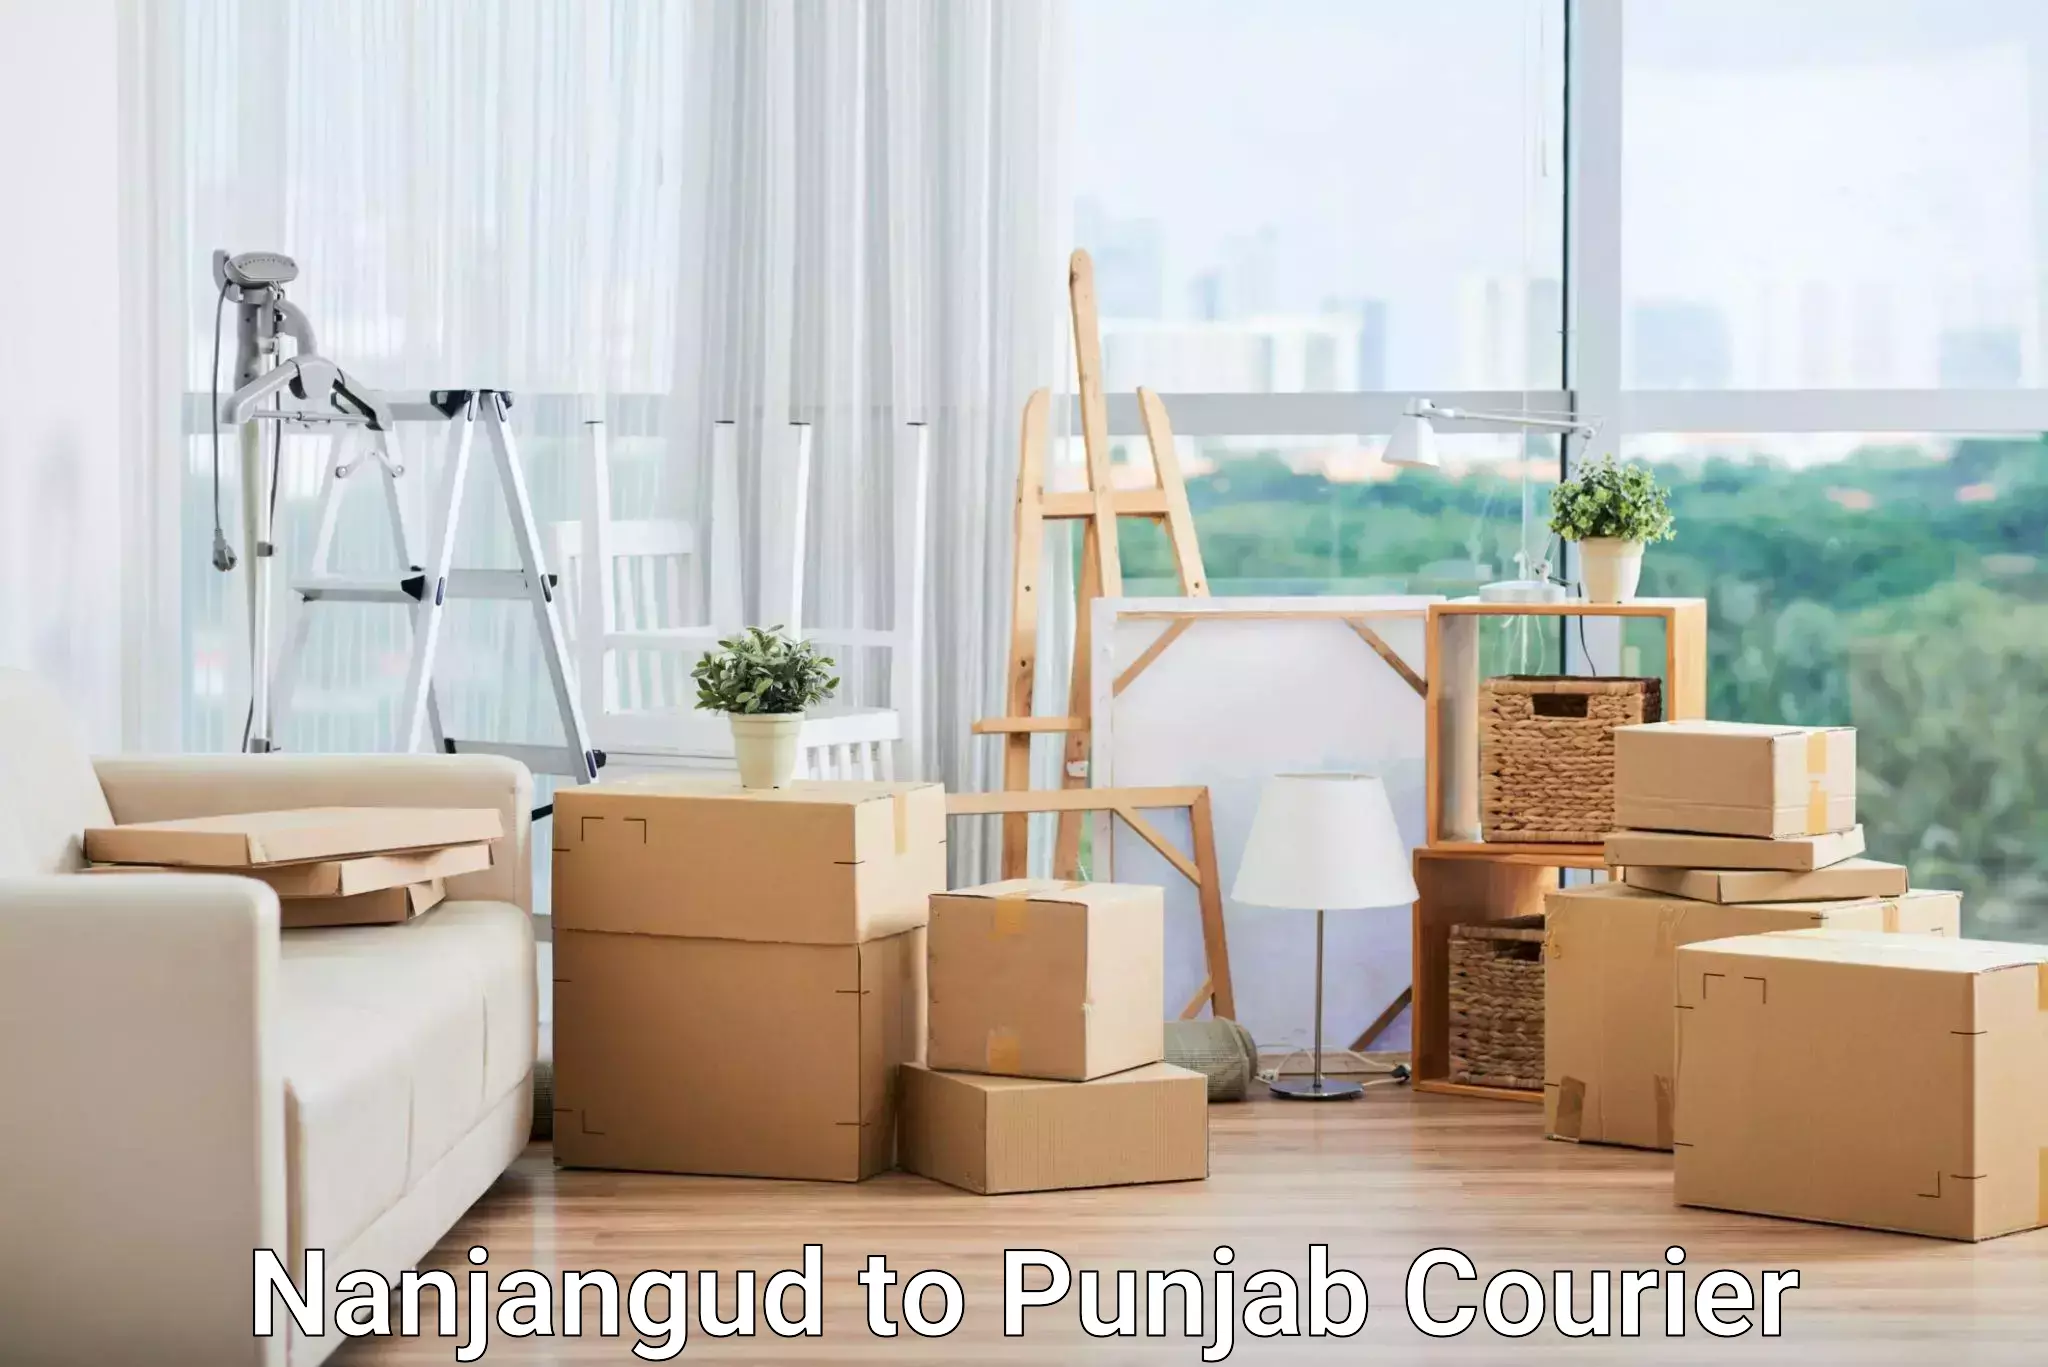 International courier rates Nanjangud to Punjab